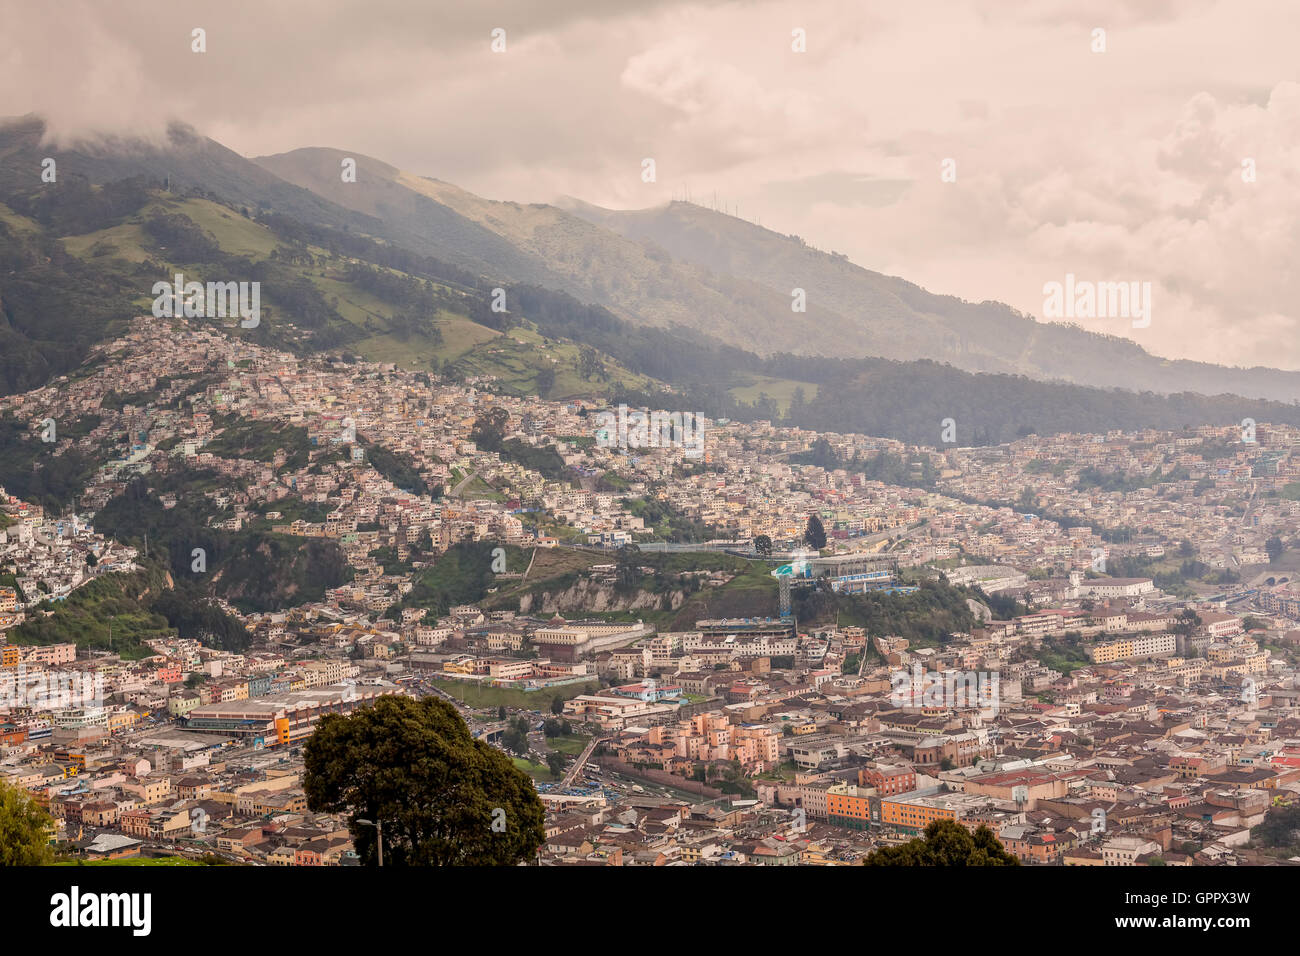 Aerial View Of Quito, Ecuador, South America Stock Photo